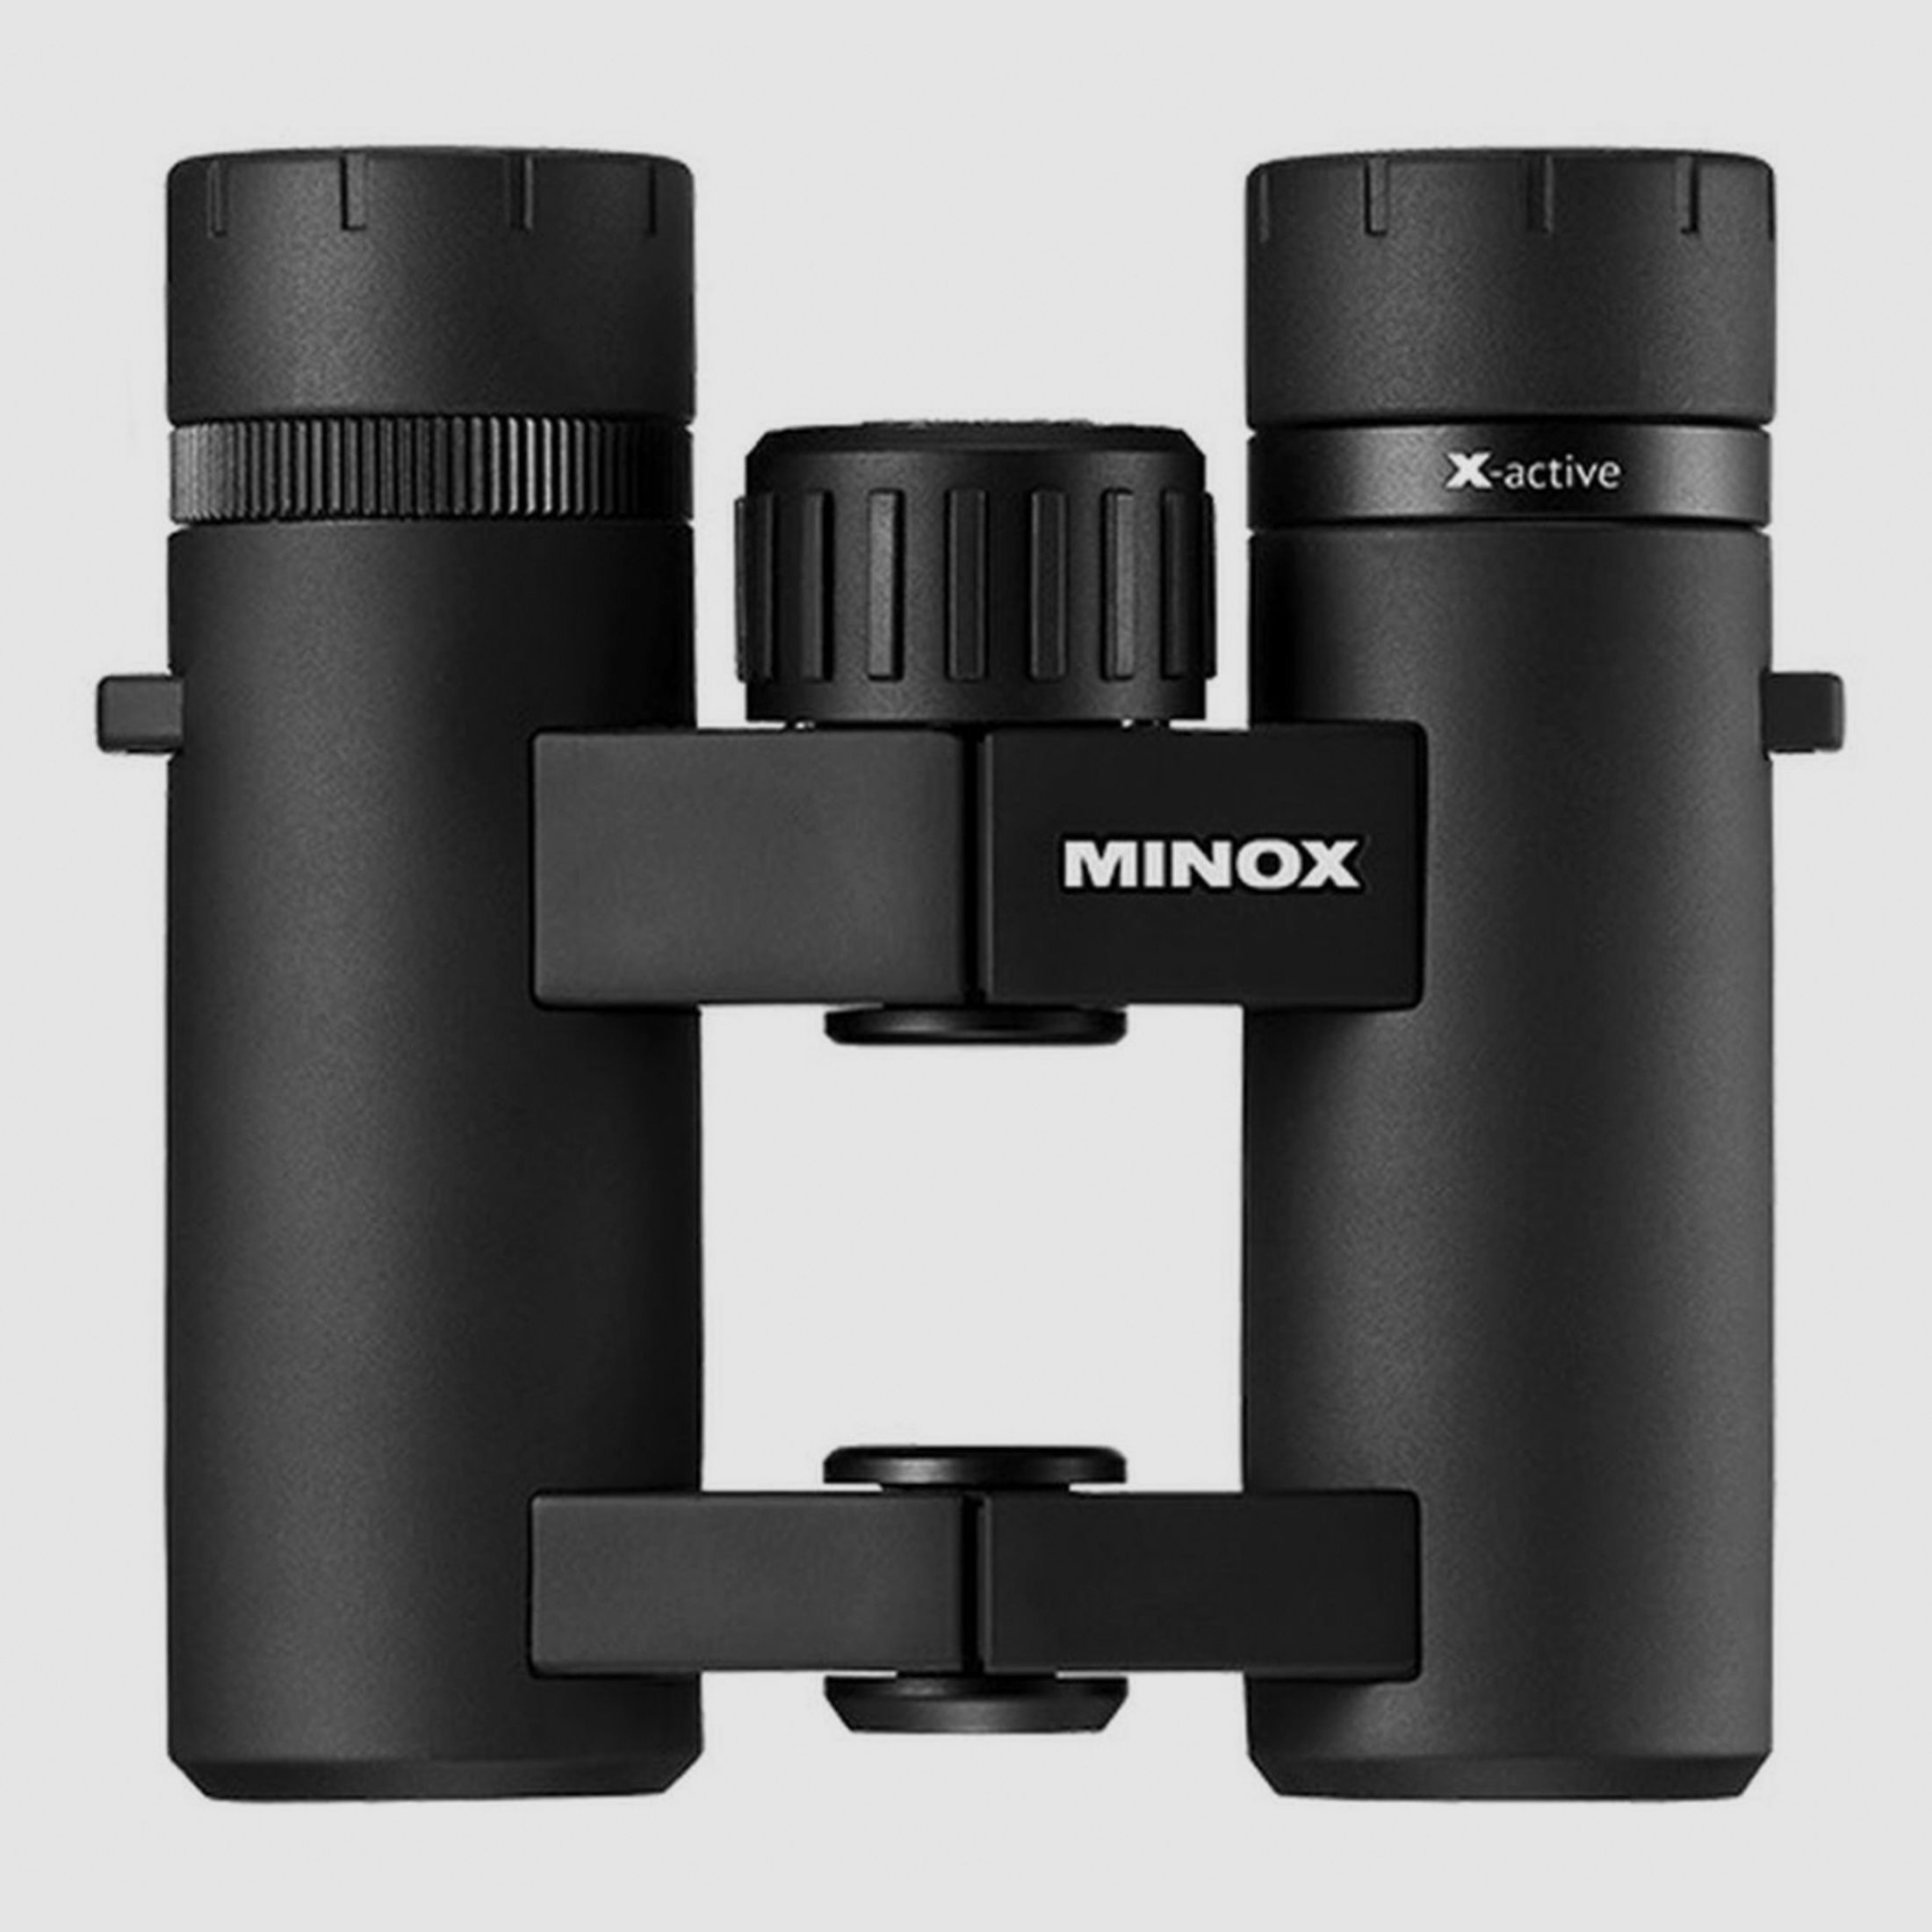 Minox Minox X-active 10x25